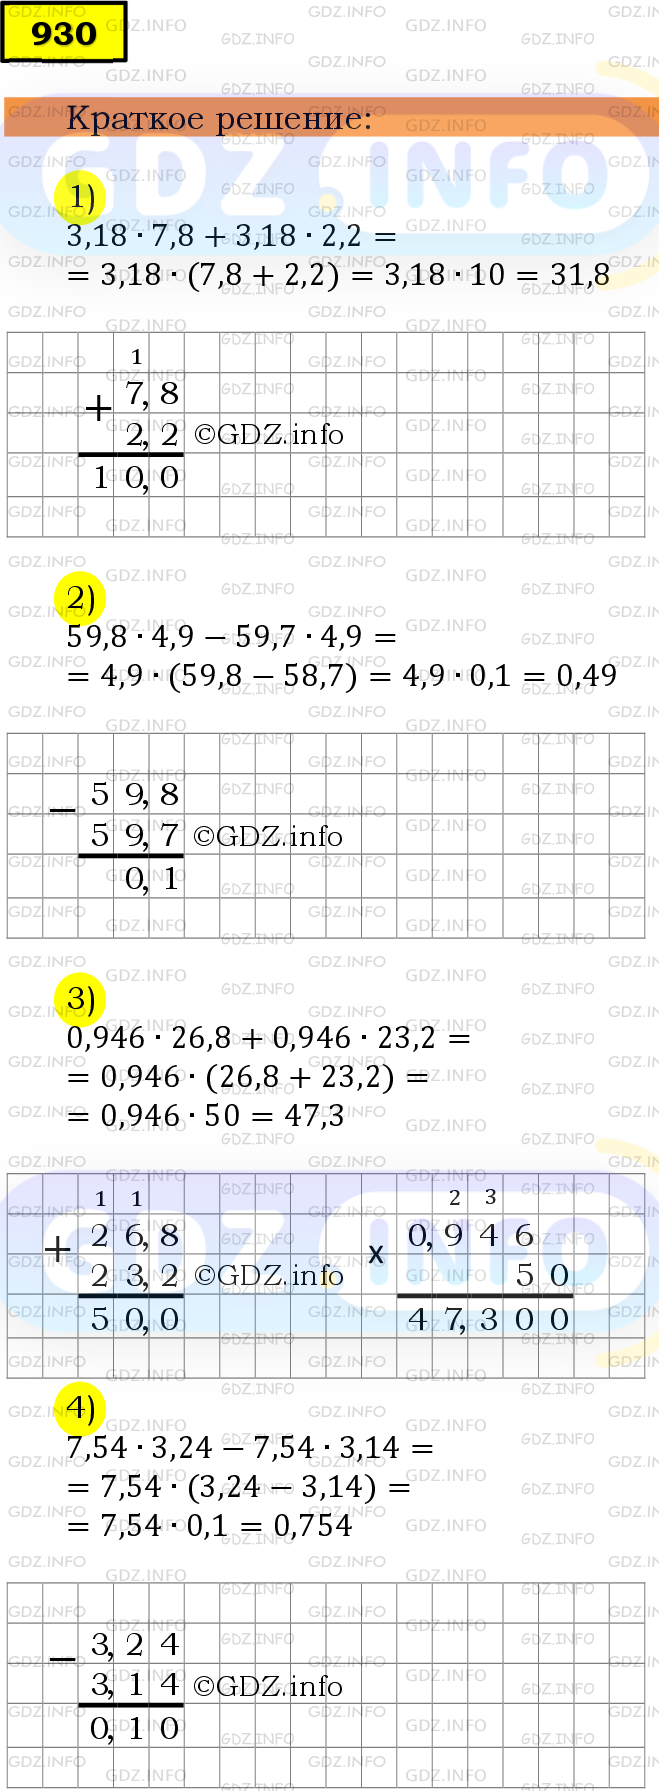 Фото решения 6: Номер №930 из ГДЗ по Математике 5 класс: Мерзляк А.Г. г.